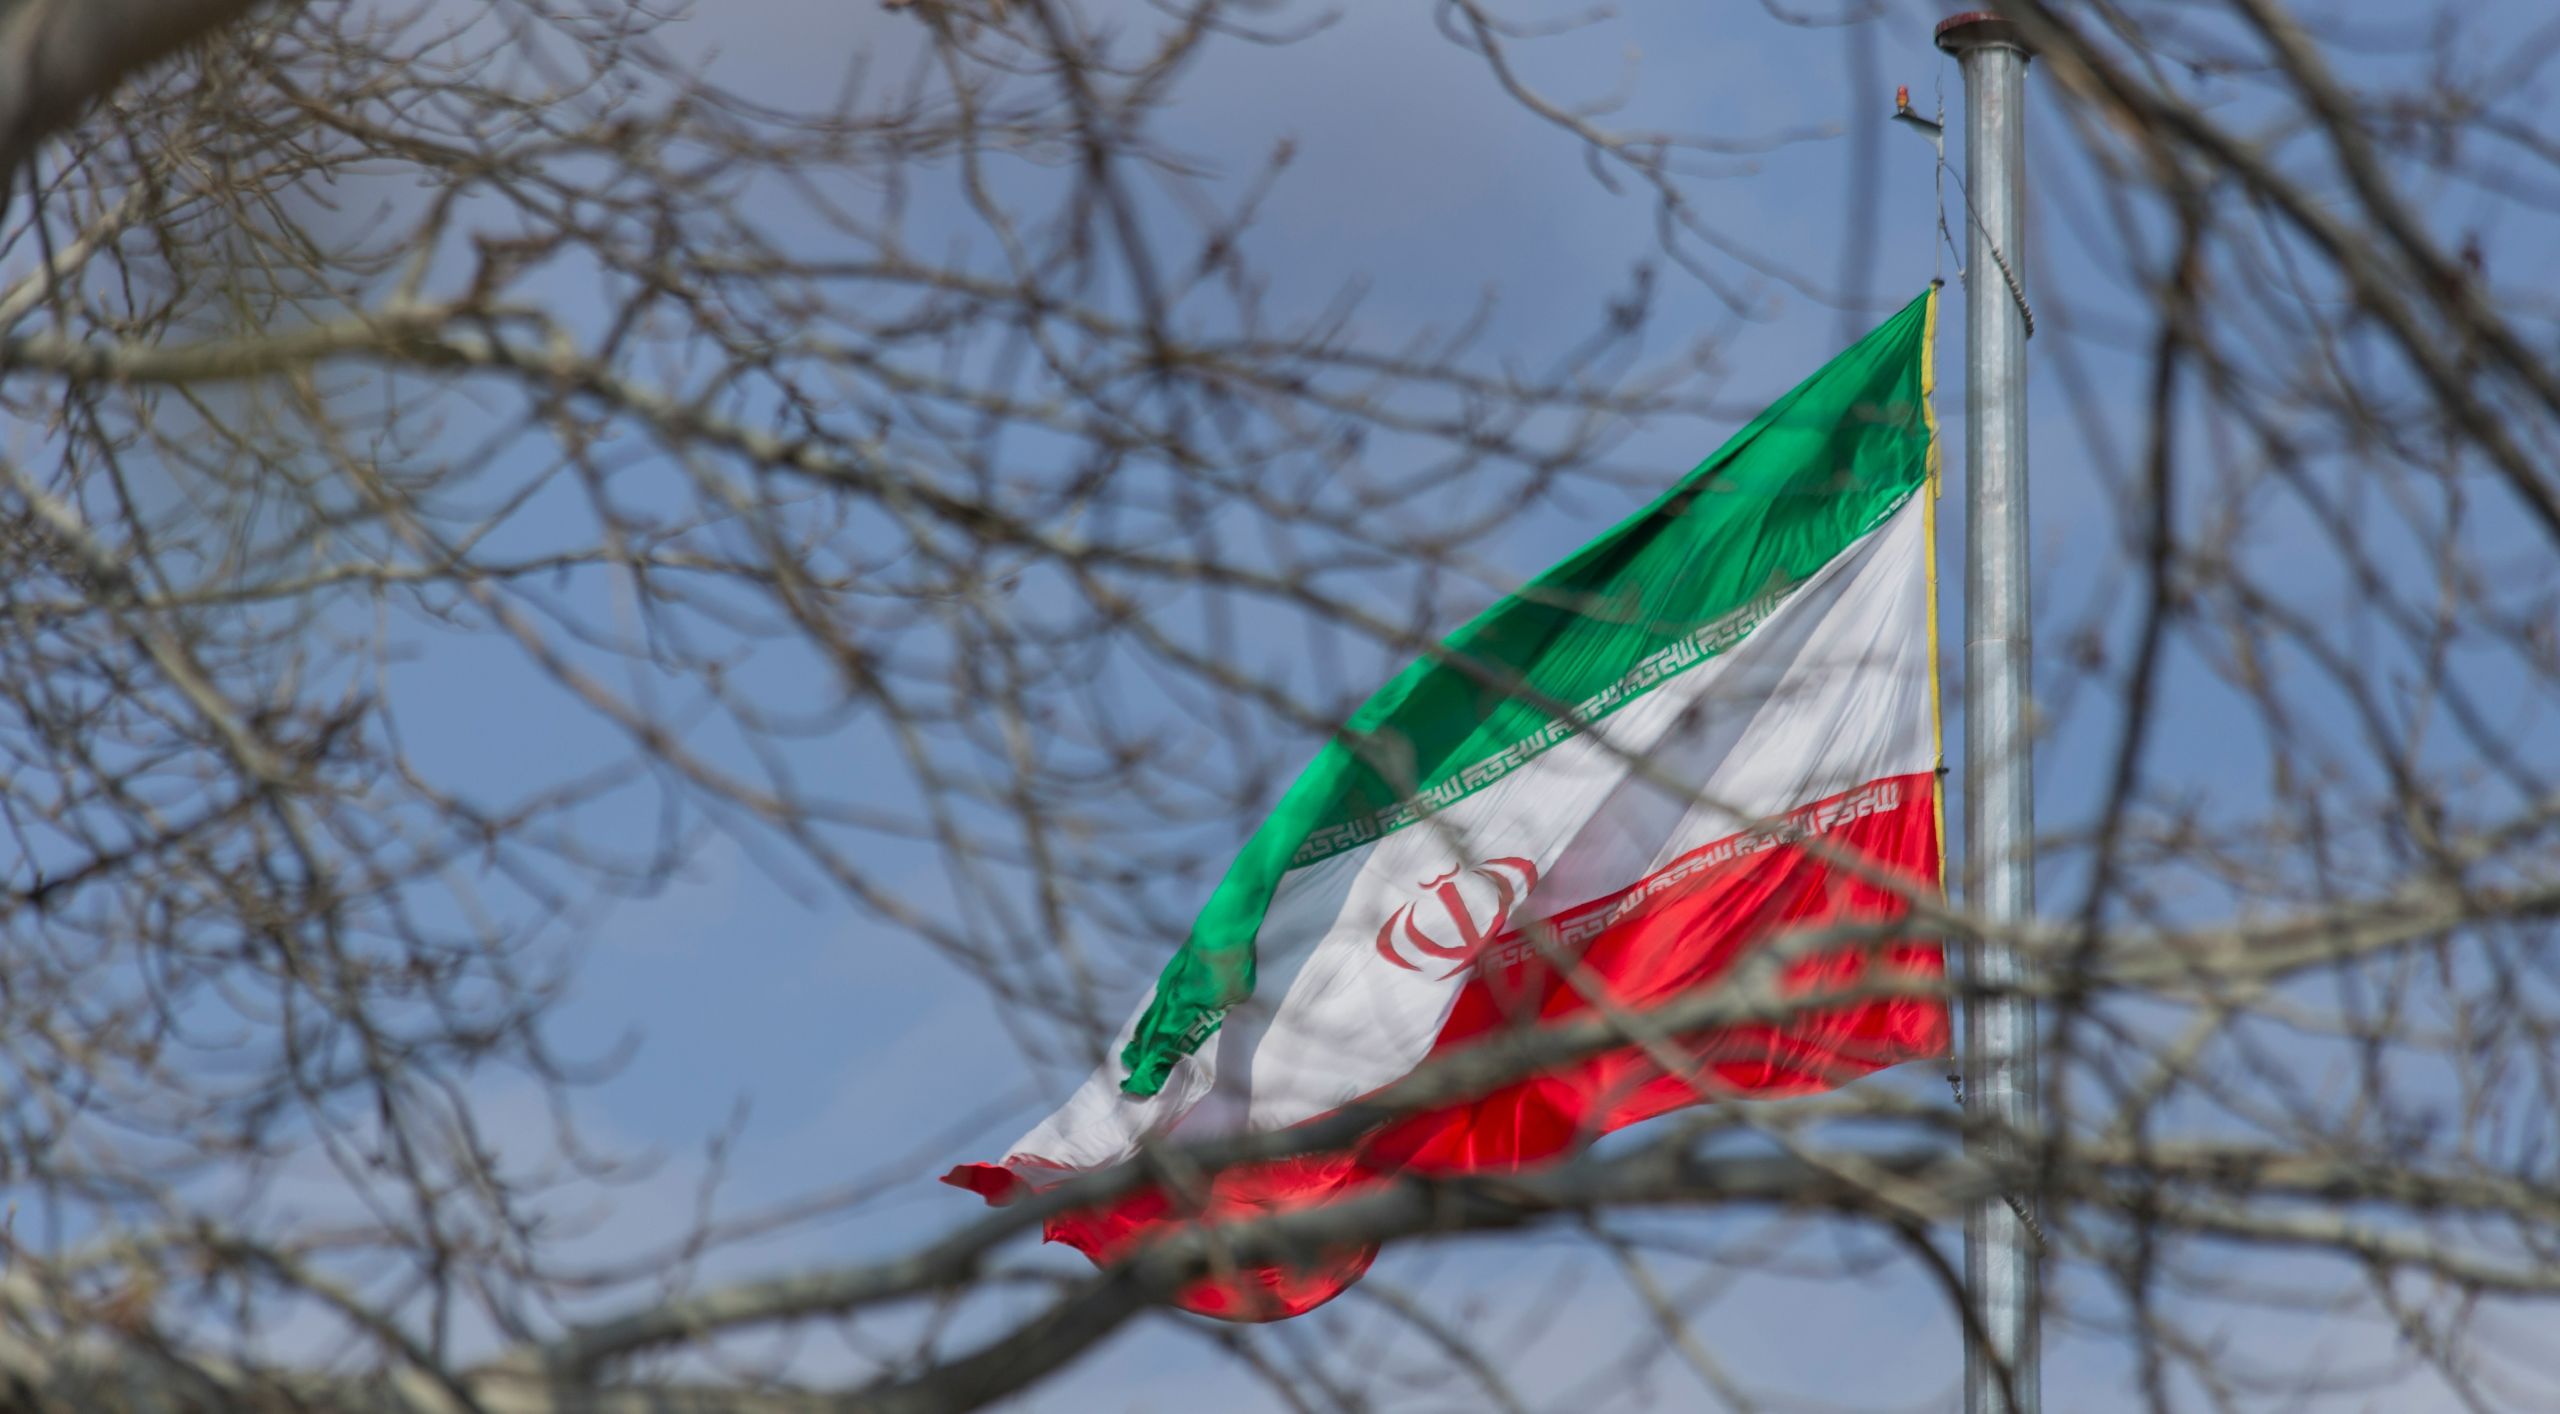 Απειλεί να ανατιναχθεί Παρίσι: Η αστυνομία απέκλεισε το προξενείο του Ιράν